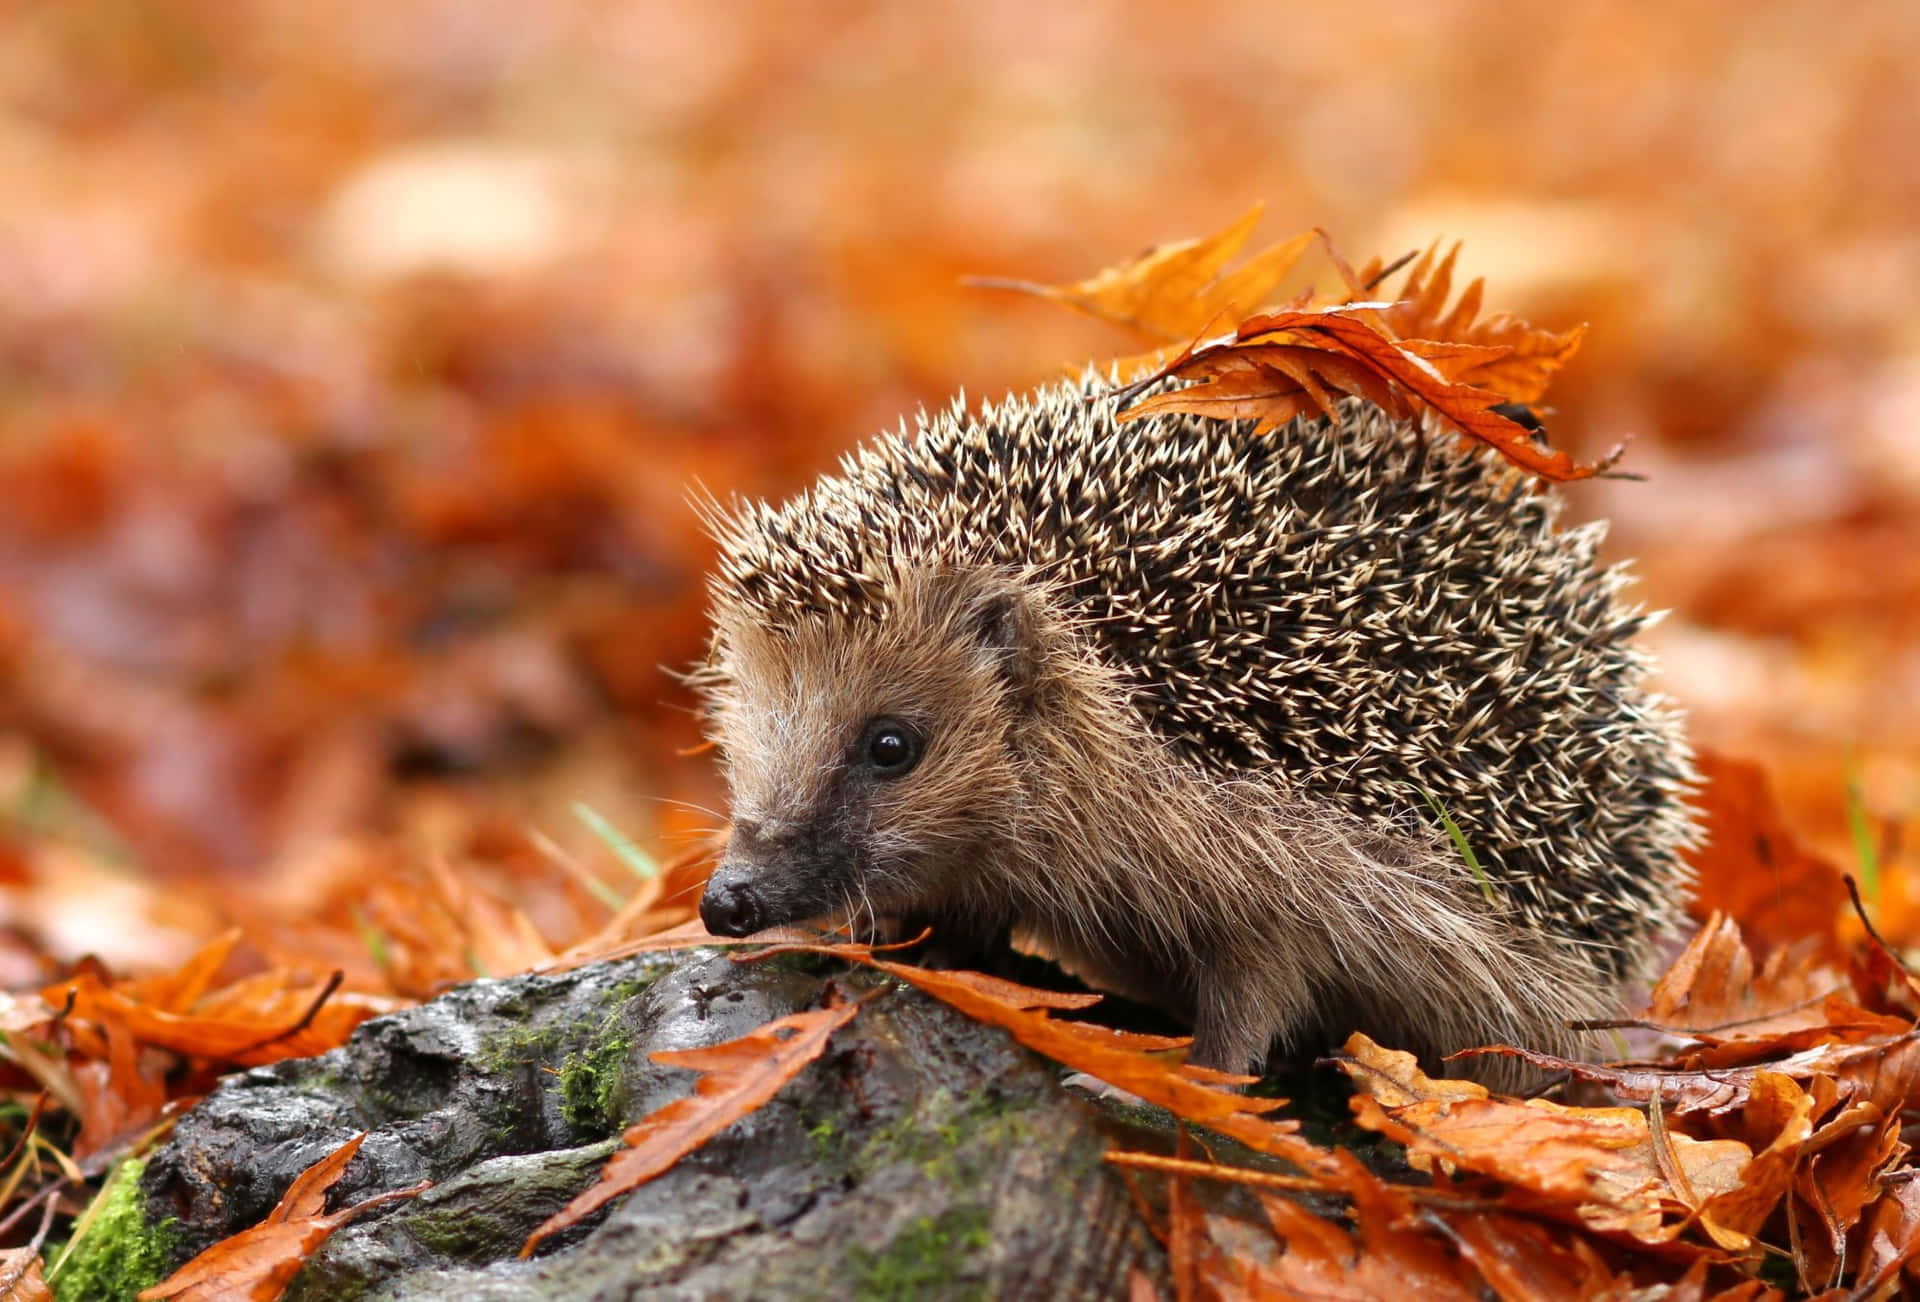 Hedgehog-billeder 2000 X 1356